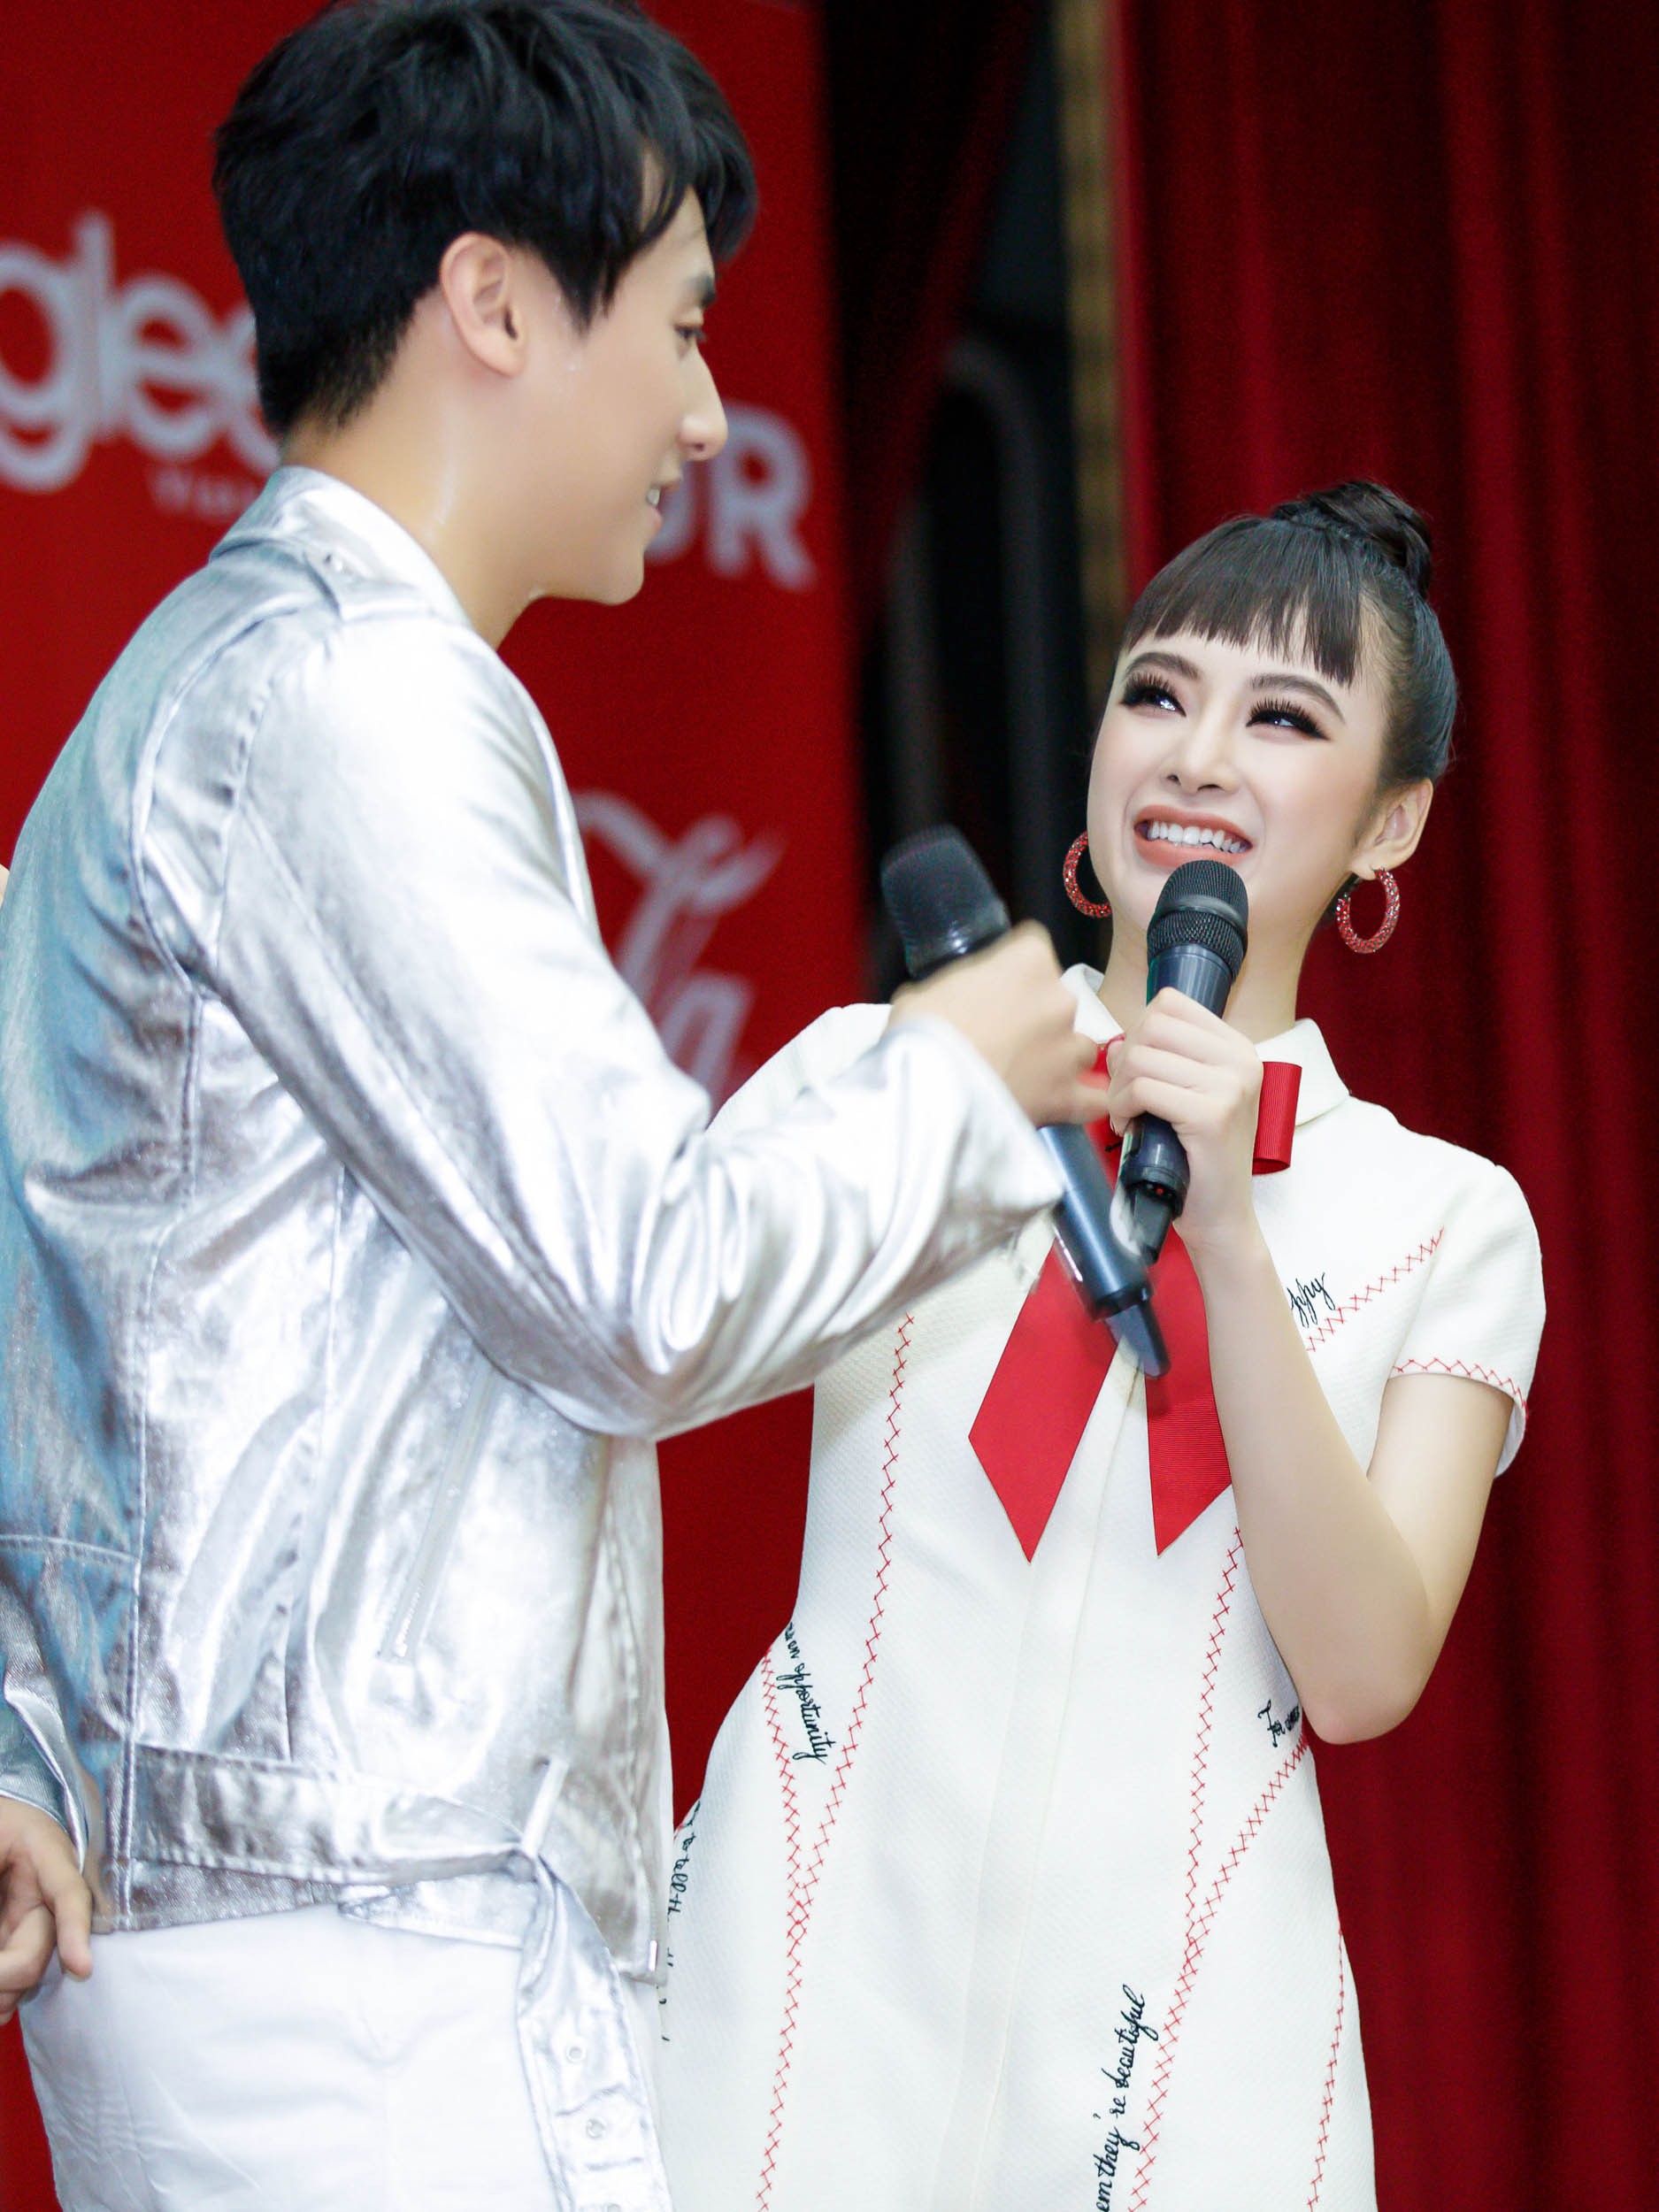 Angela Phương Trinh nắm tay Rocker Nguyễn, nhớ lại cảnh hôn nhau nhưng vẫn chọn Hữu Vi là bạn trai lý tưởng - Ảnh 4.